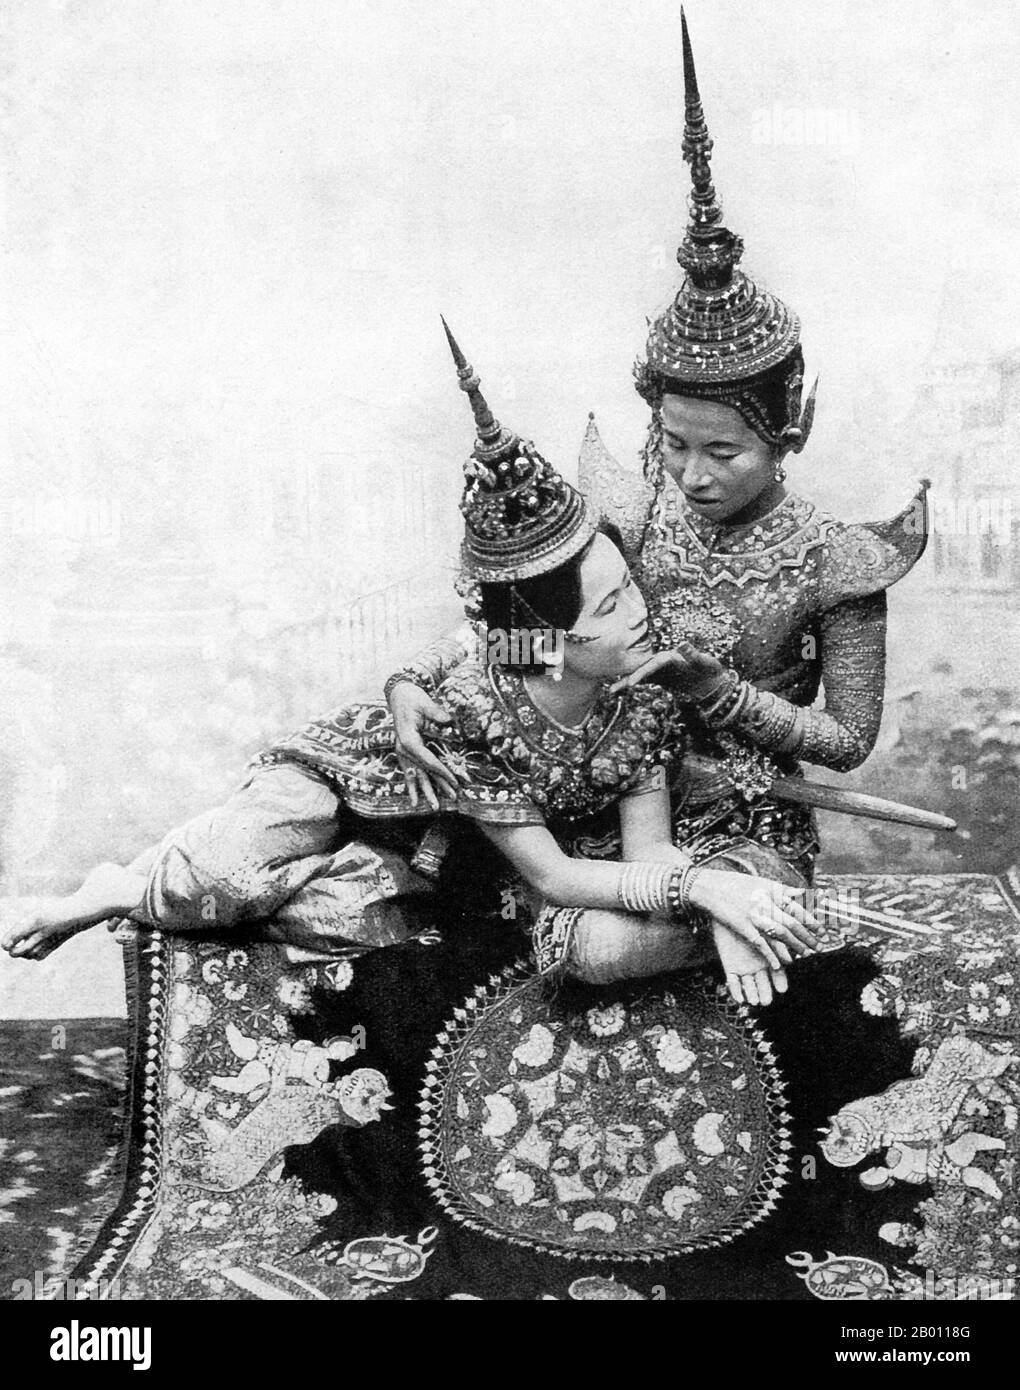 Tailandia: Dos actores teatrales juegan una escena de amor de un drama siamés, c. 1900. Los siameses eran ávidos amantes del teatro a principios del siglo 20th. MIME, danza, juegos y marionetas de sombra eran todos muy populares. Muchas de las obras de teatro involucraron a bailarines, en su mayoría mujeres, que se adornaban en joyas y exhibían movimientos de mentiroso que retrataban la belleza y la flexibilidad, especialmente al doblar los dedos hacia atrás. Las obras más comunes se llamaban «khon», que esencialmente presenta escenas del «Ramakien», la versión tailandesa de la epopeya hindú «The Ramayana». Foto de stock